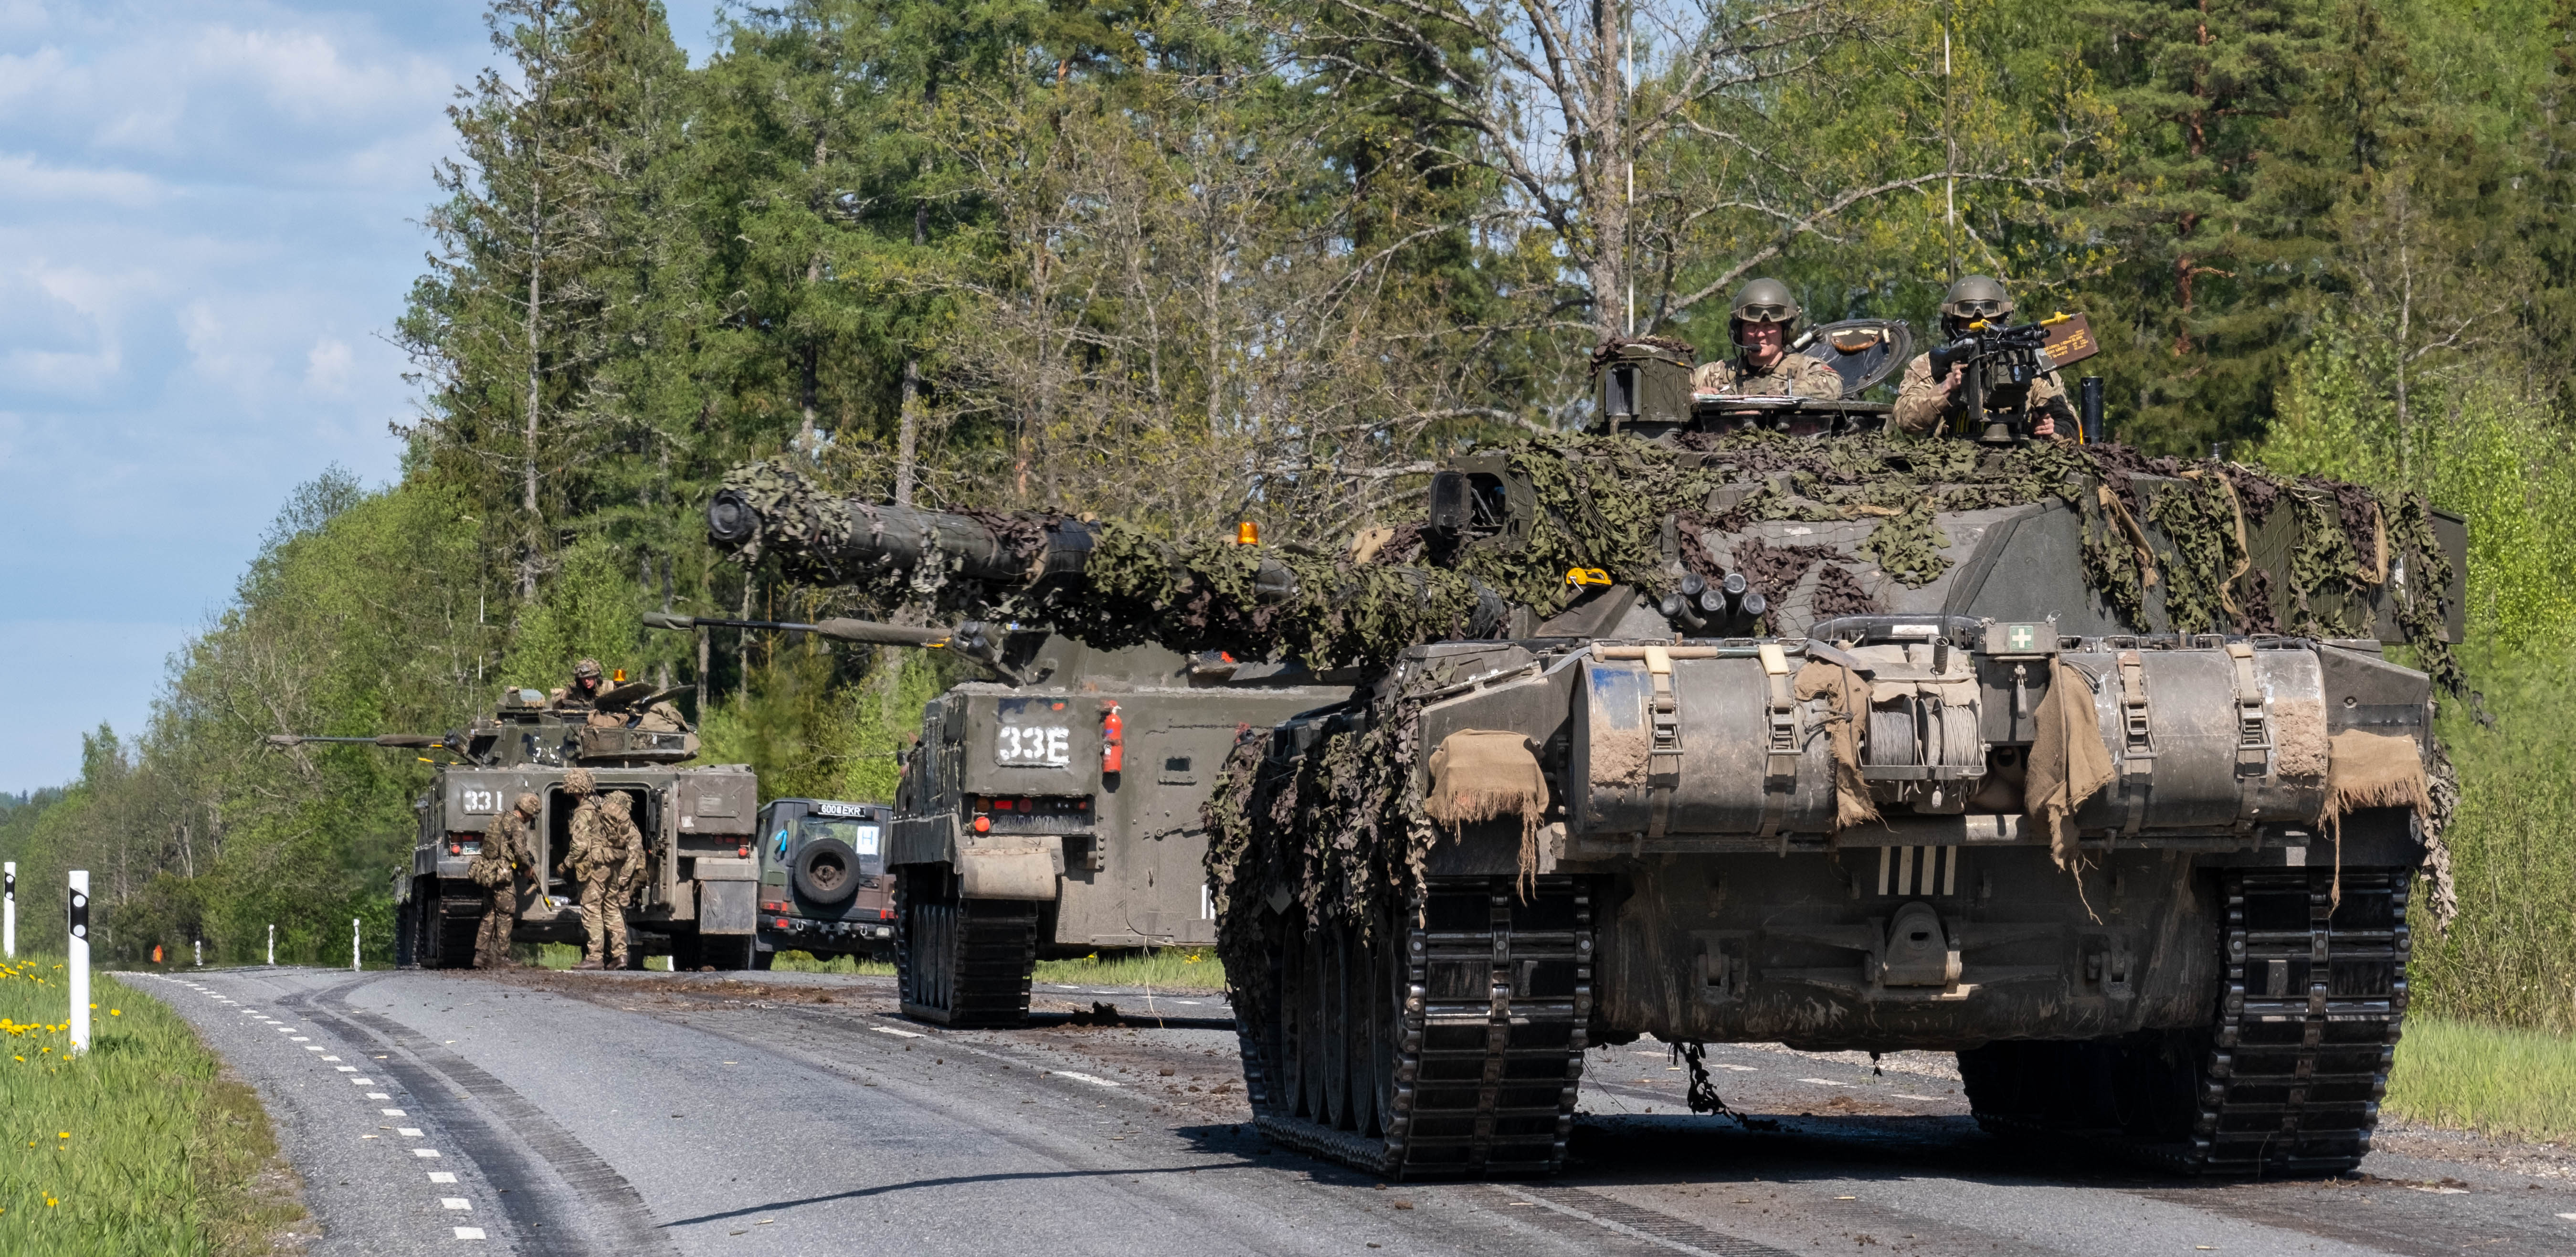 Tanks run down road.